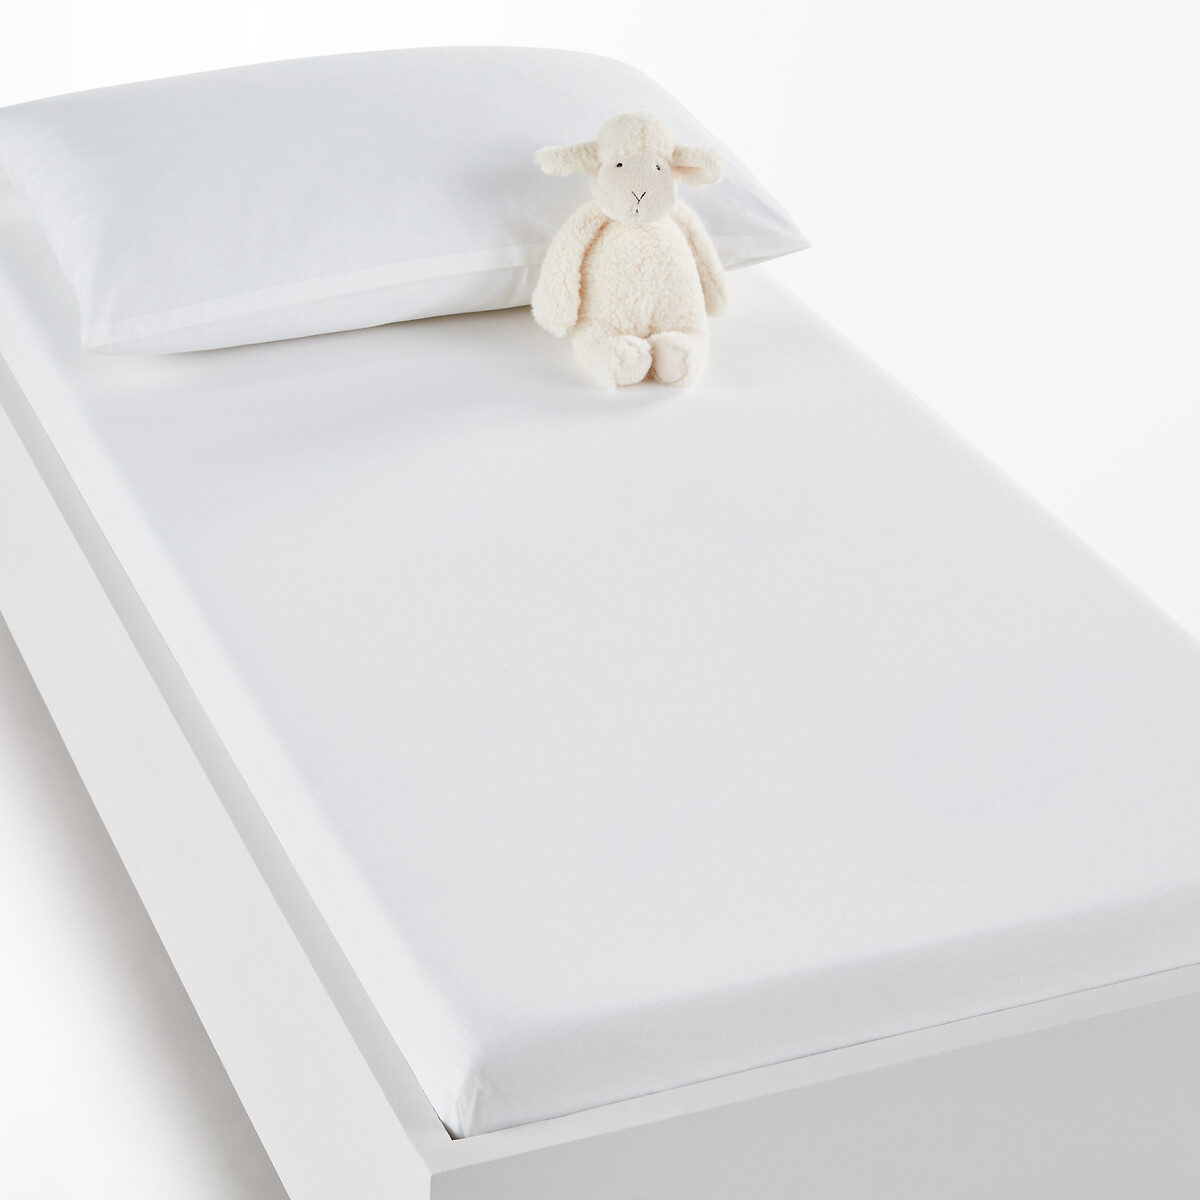 Натяжная простыня из хлопка для детской кроватки Scenario 90 x 140 см белый